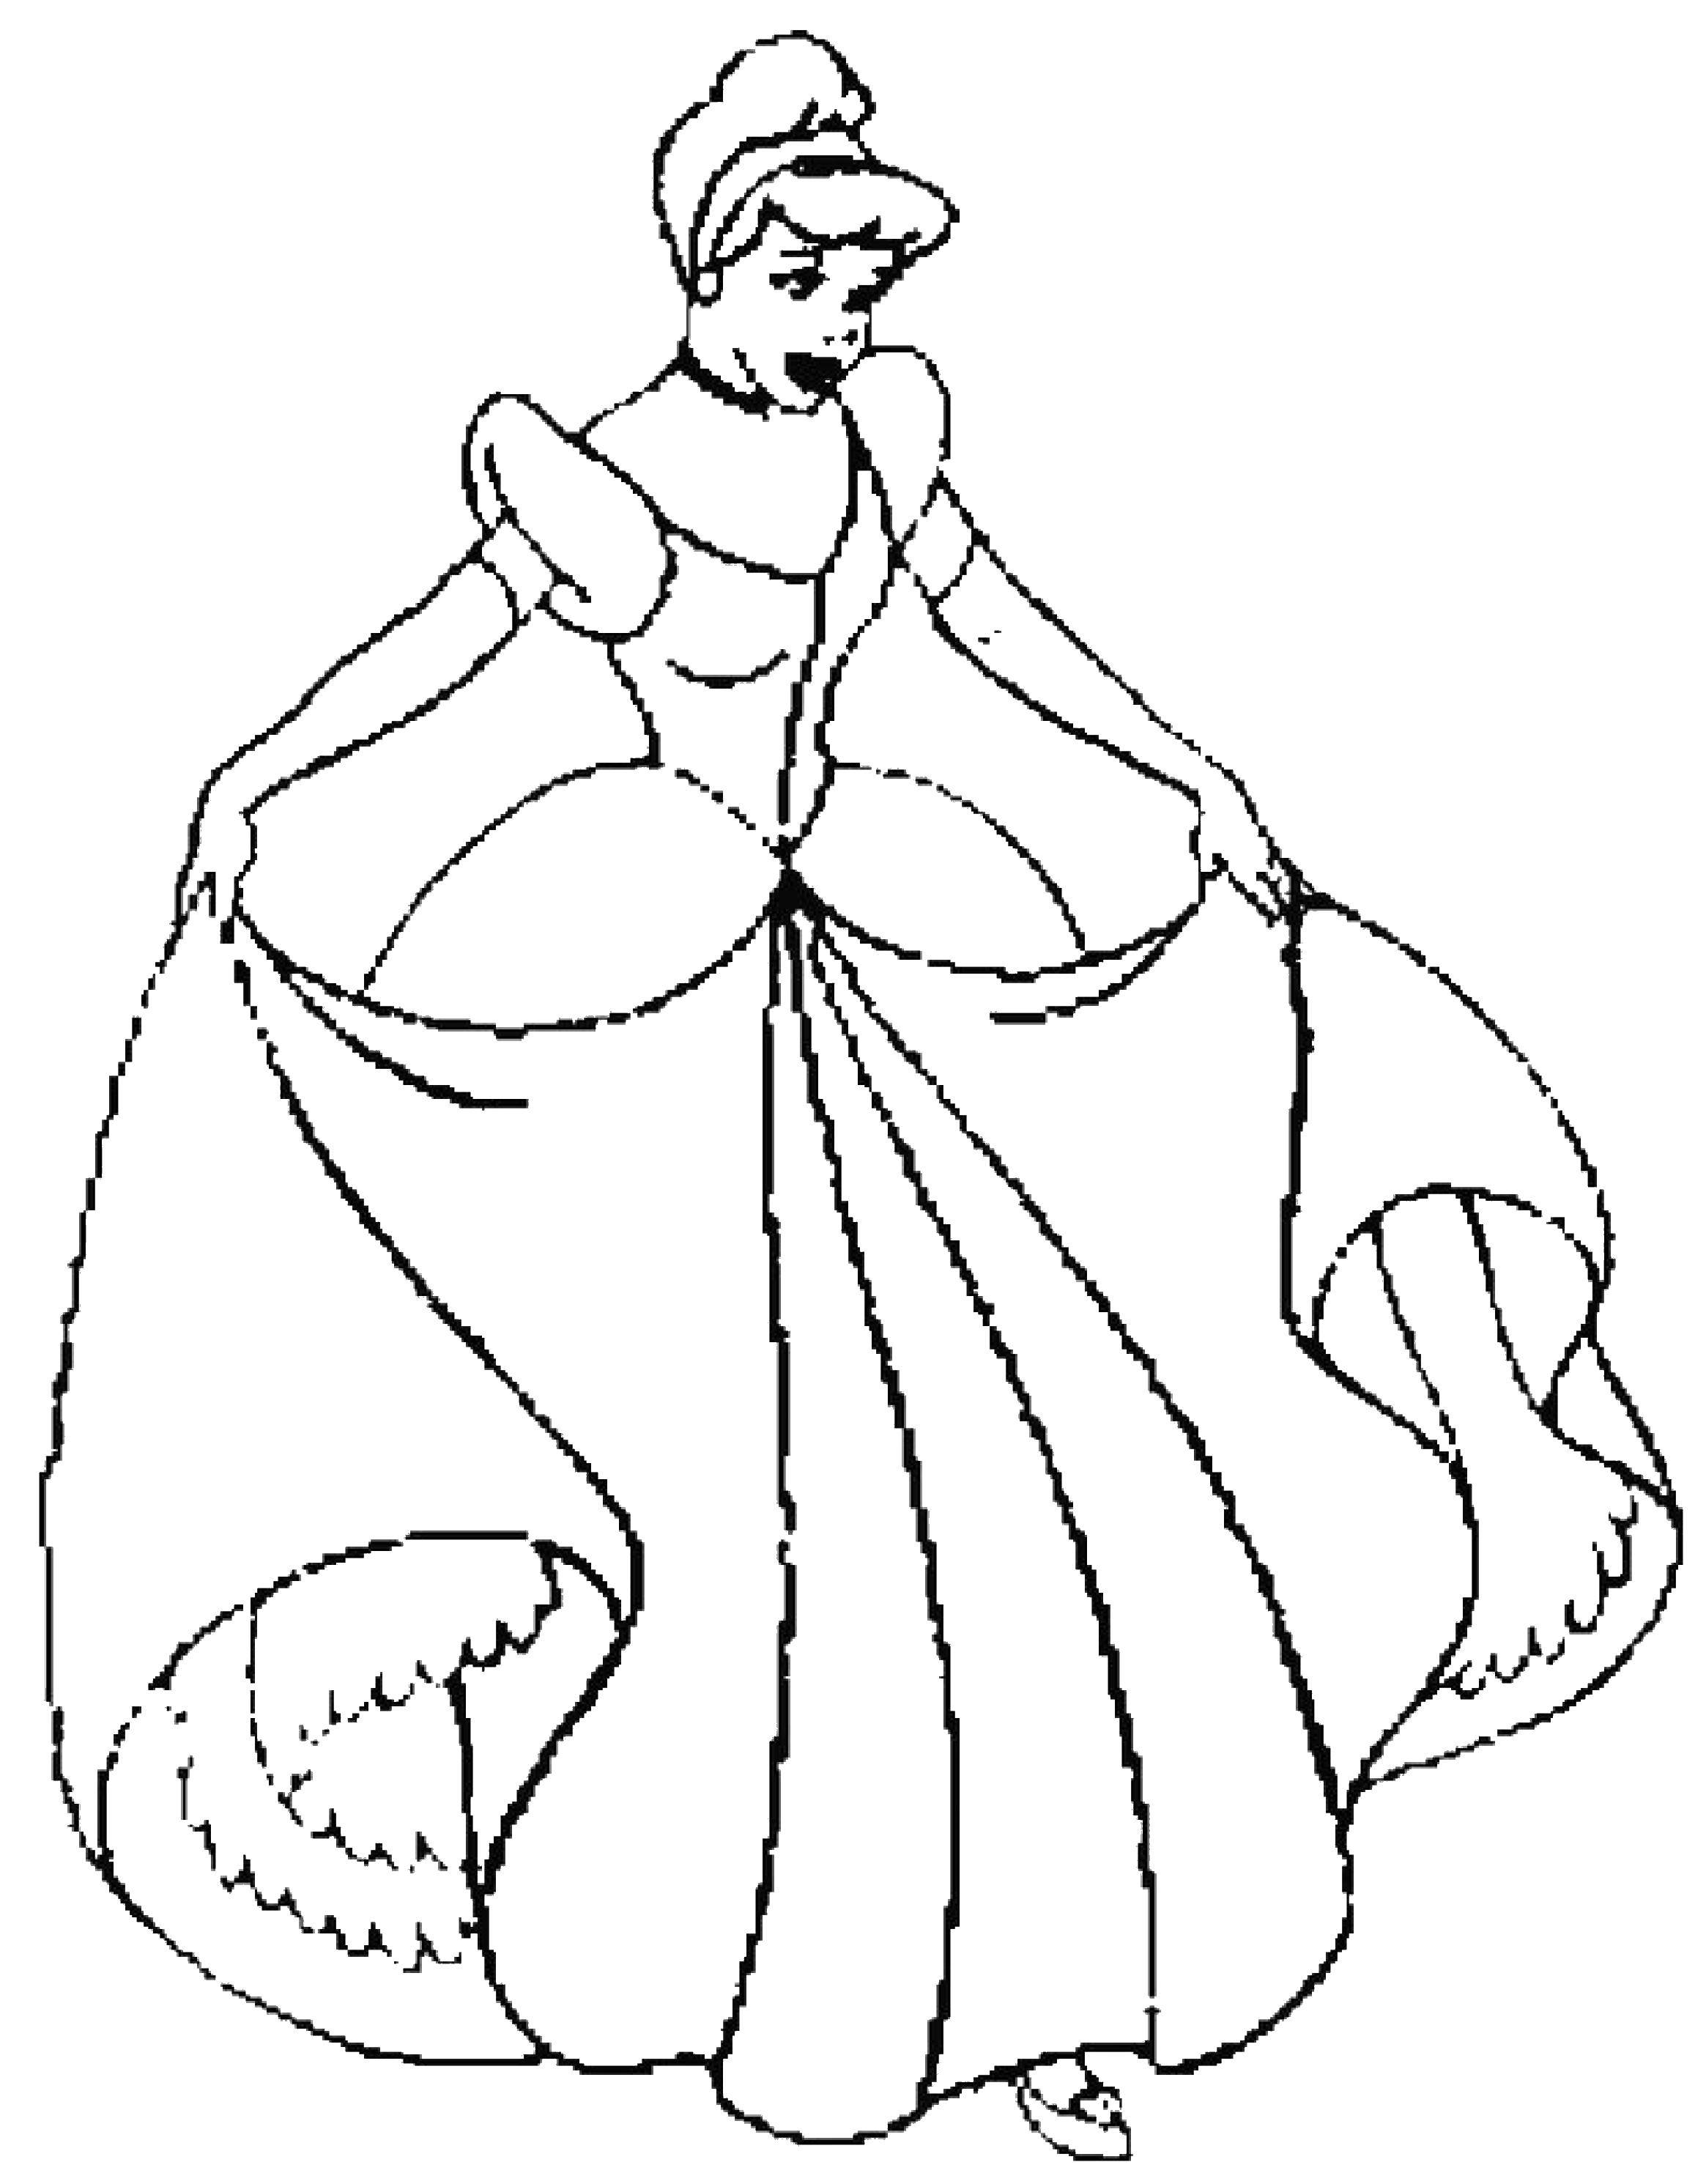 Coloring Cinderella in a dress. Category Cinderella. Tags:  Cinderella, Prince, carriage, wedding.